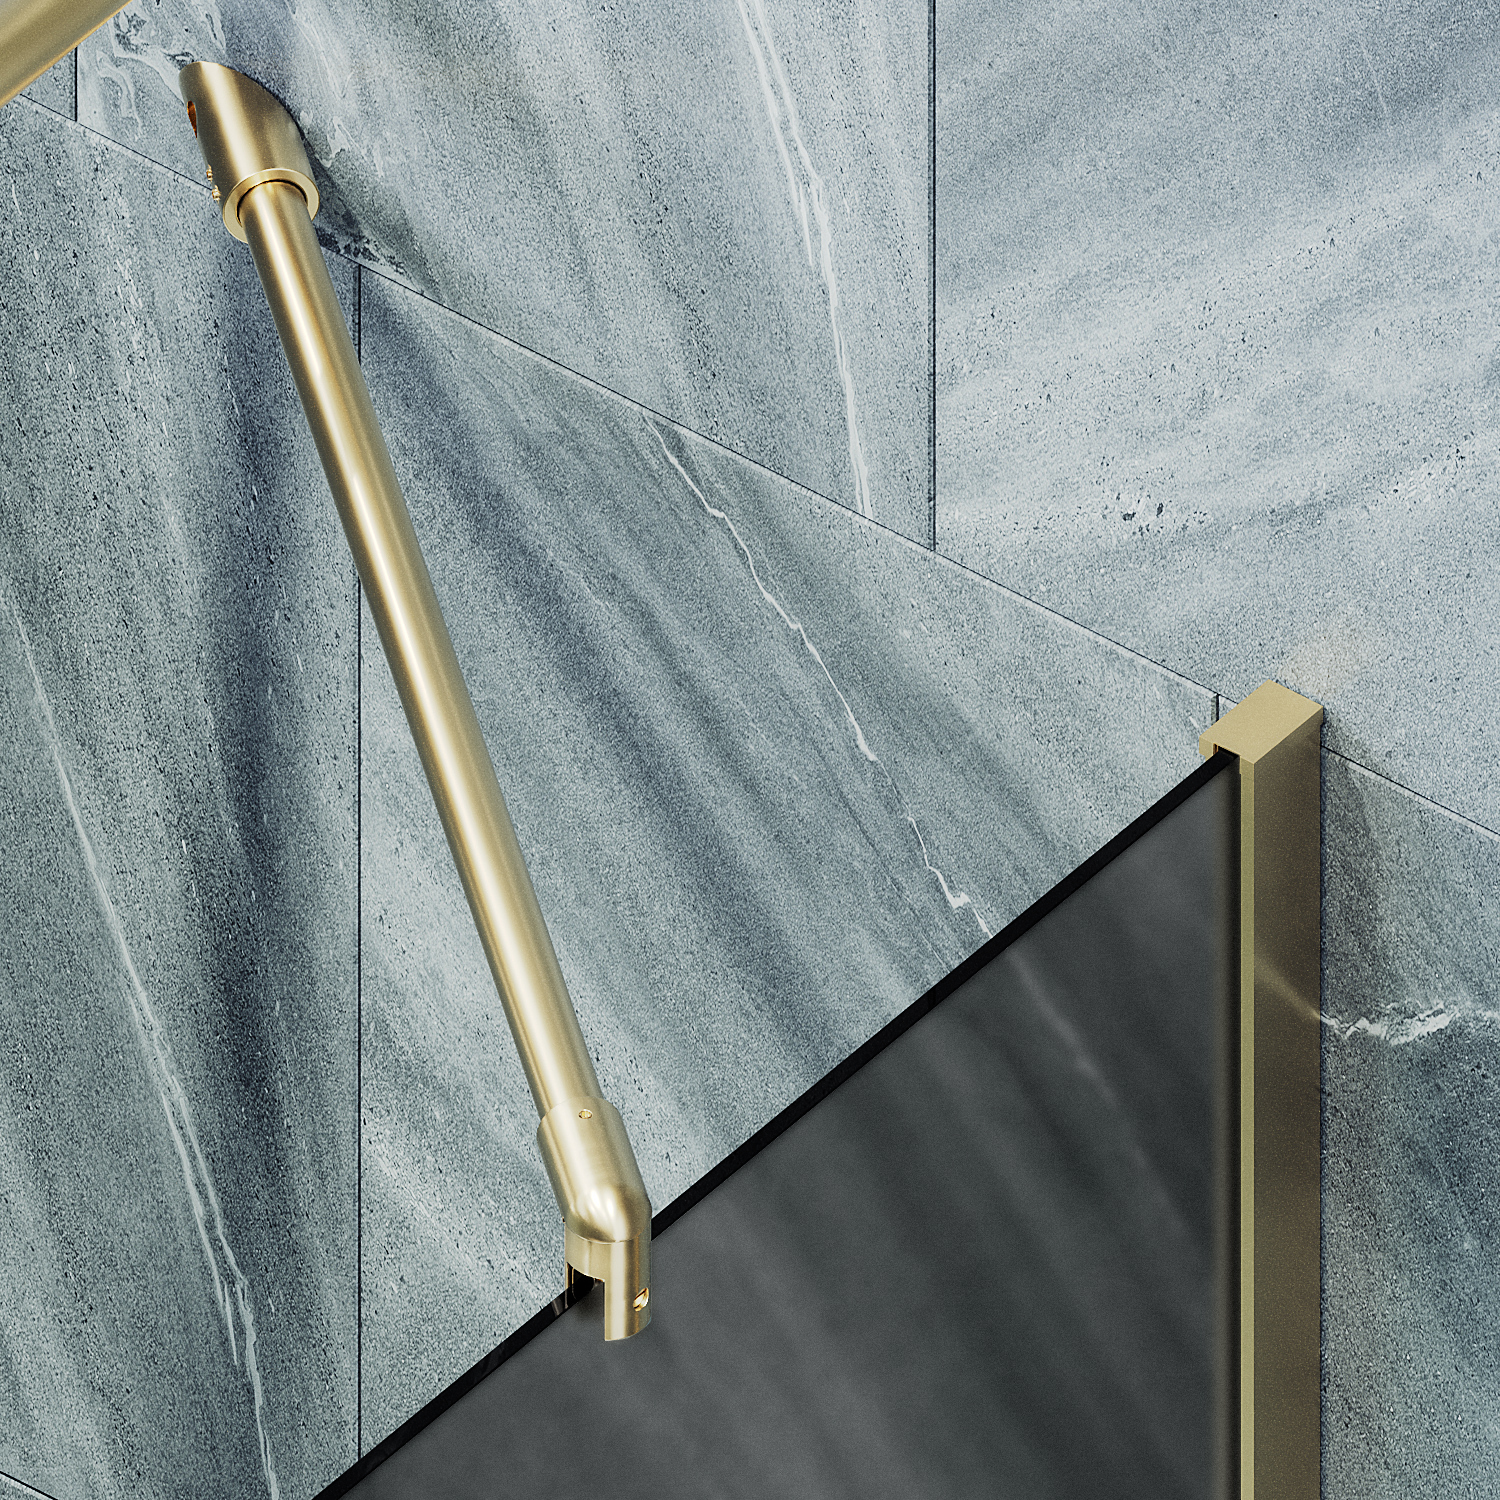 Шторка для ванны MaybahGlass 90х140 MGV-89-3ш стекло графит матовый, профиль золото - фото 3